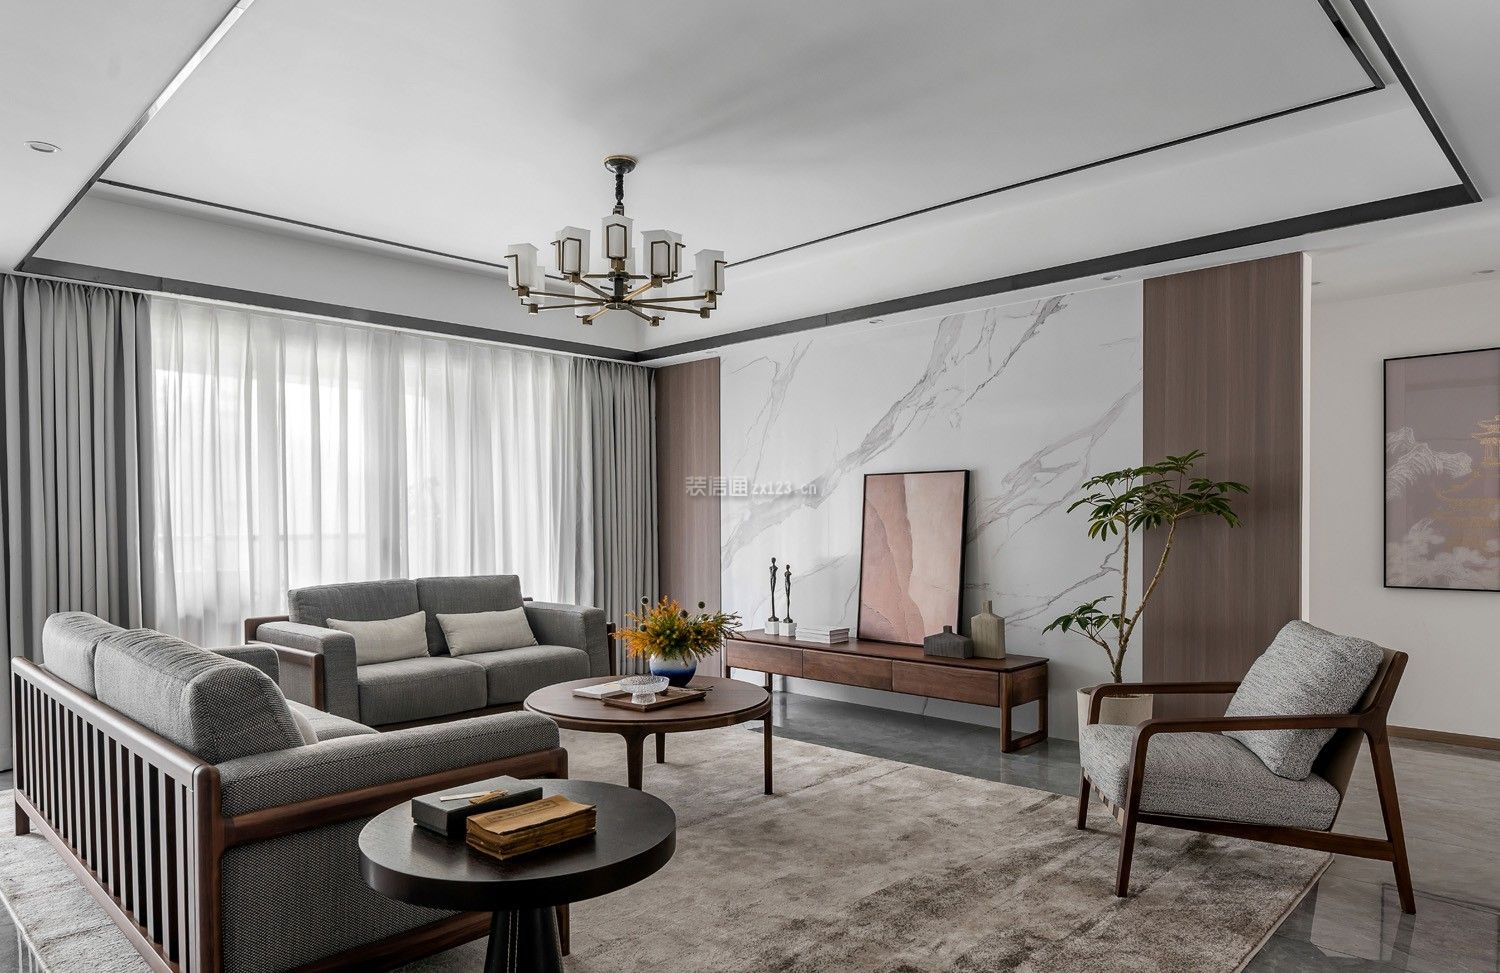 新中式客厅的电视背景墙图 新中式客厅沙发图片 新中式客厅窗帘装修效果图